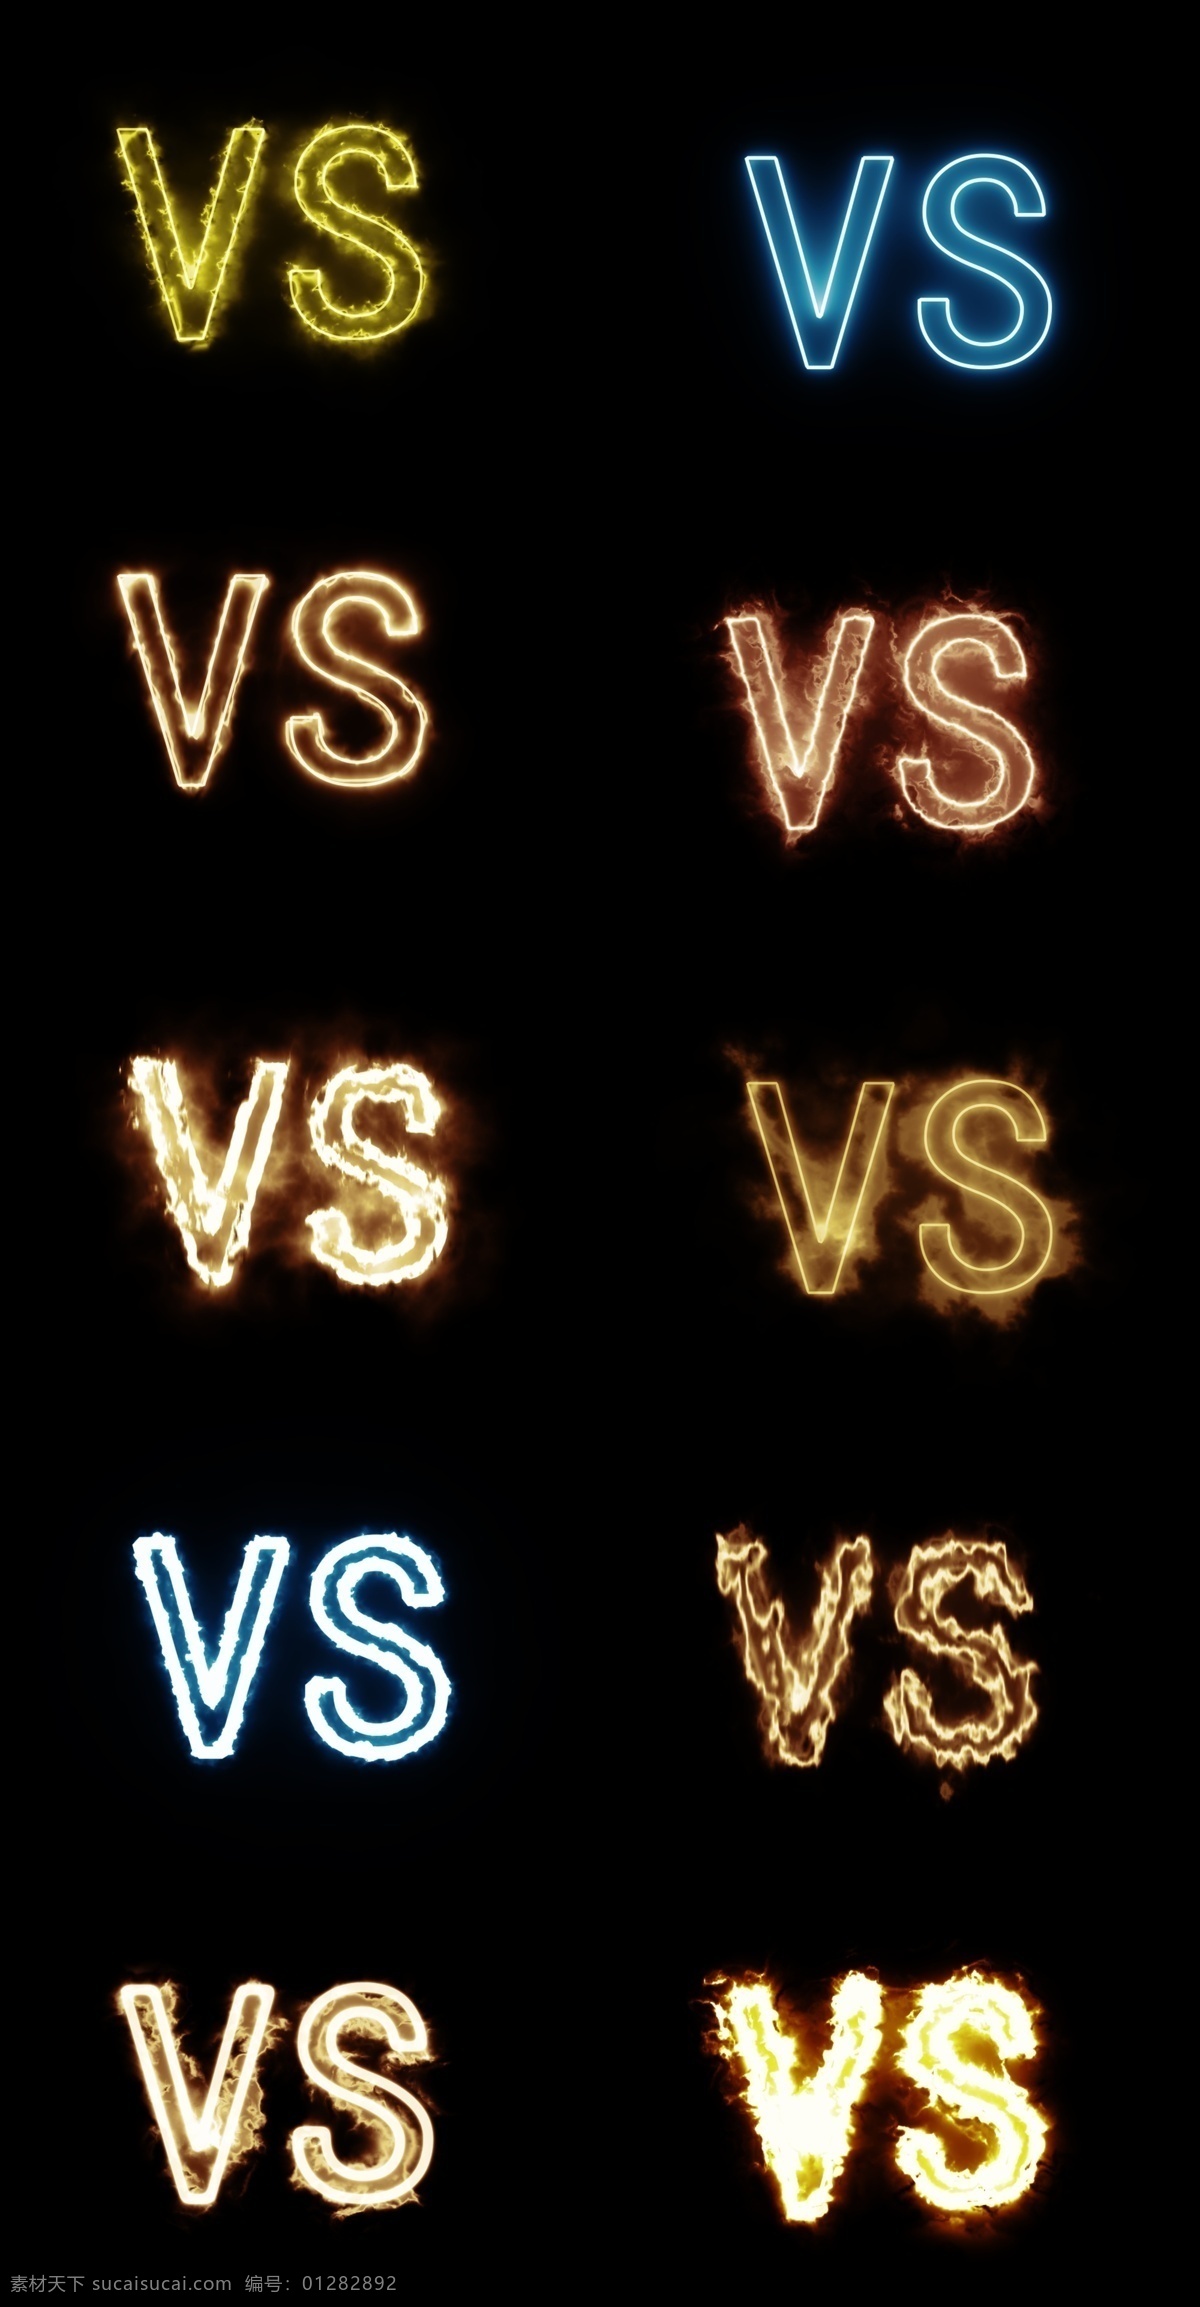 发光vs字体 发光 光效 vs 胜利 战斗 对战 pk 游戏 广告图元素 元素 免扣 分层 原创平面类